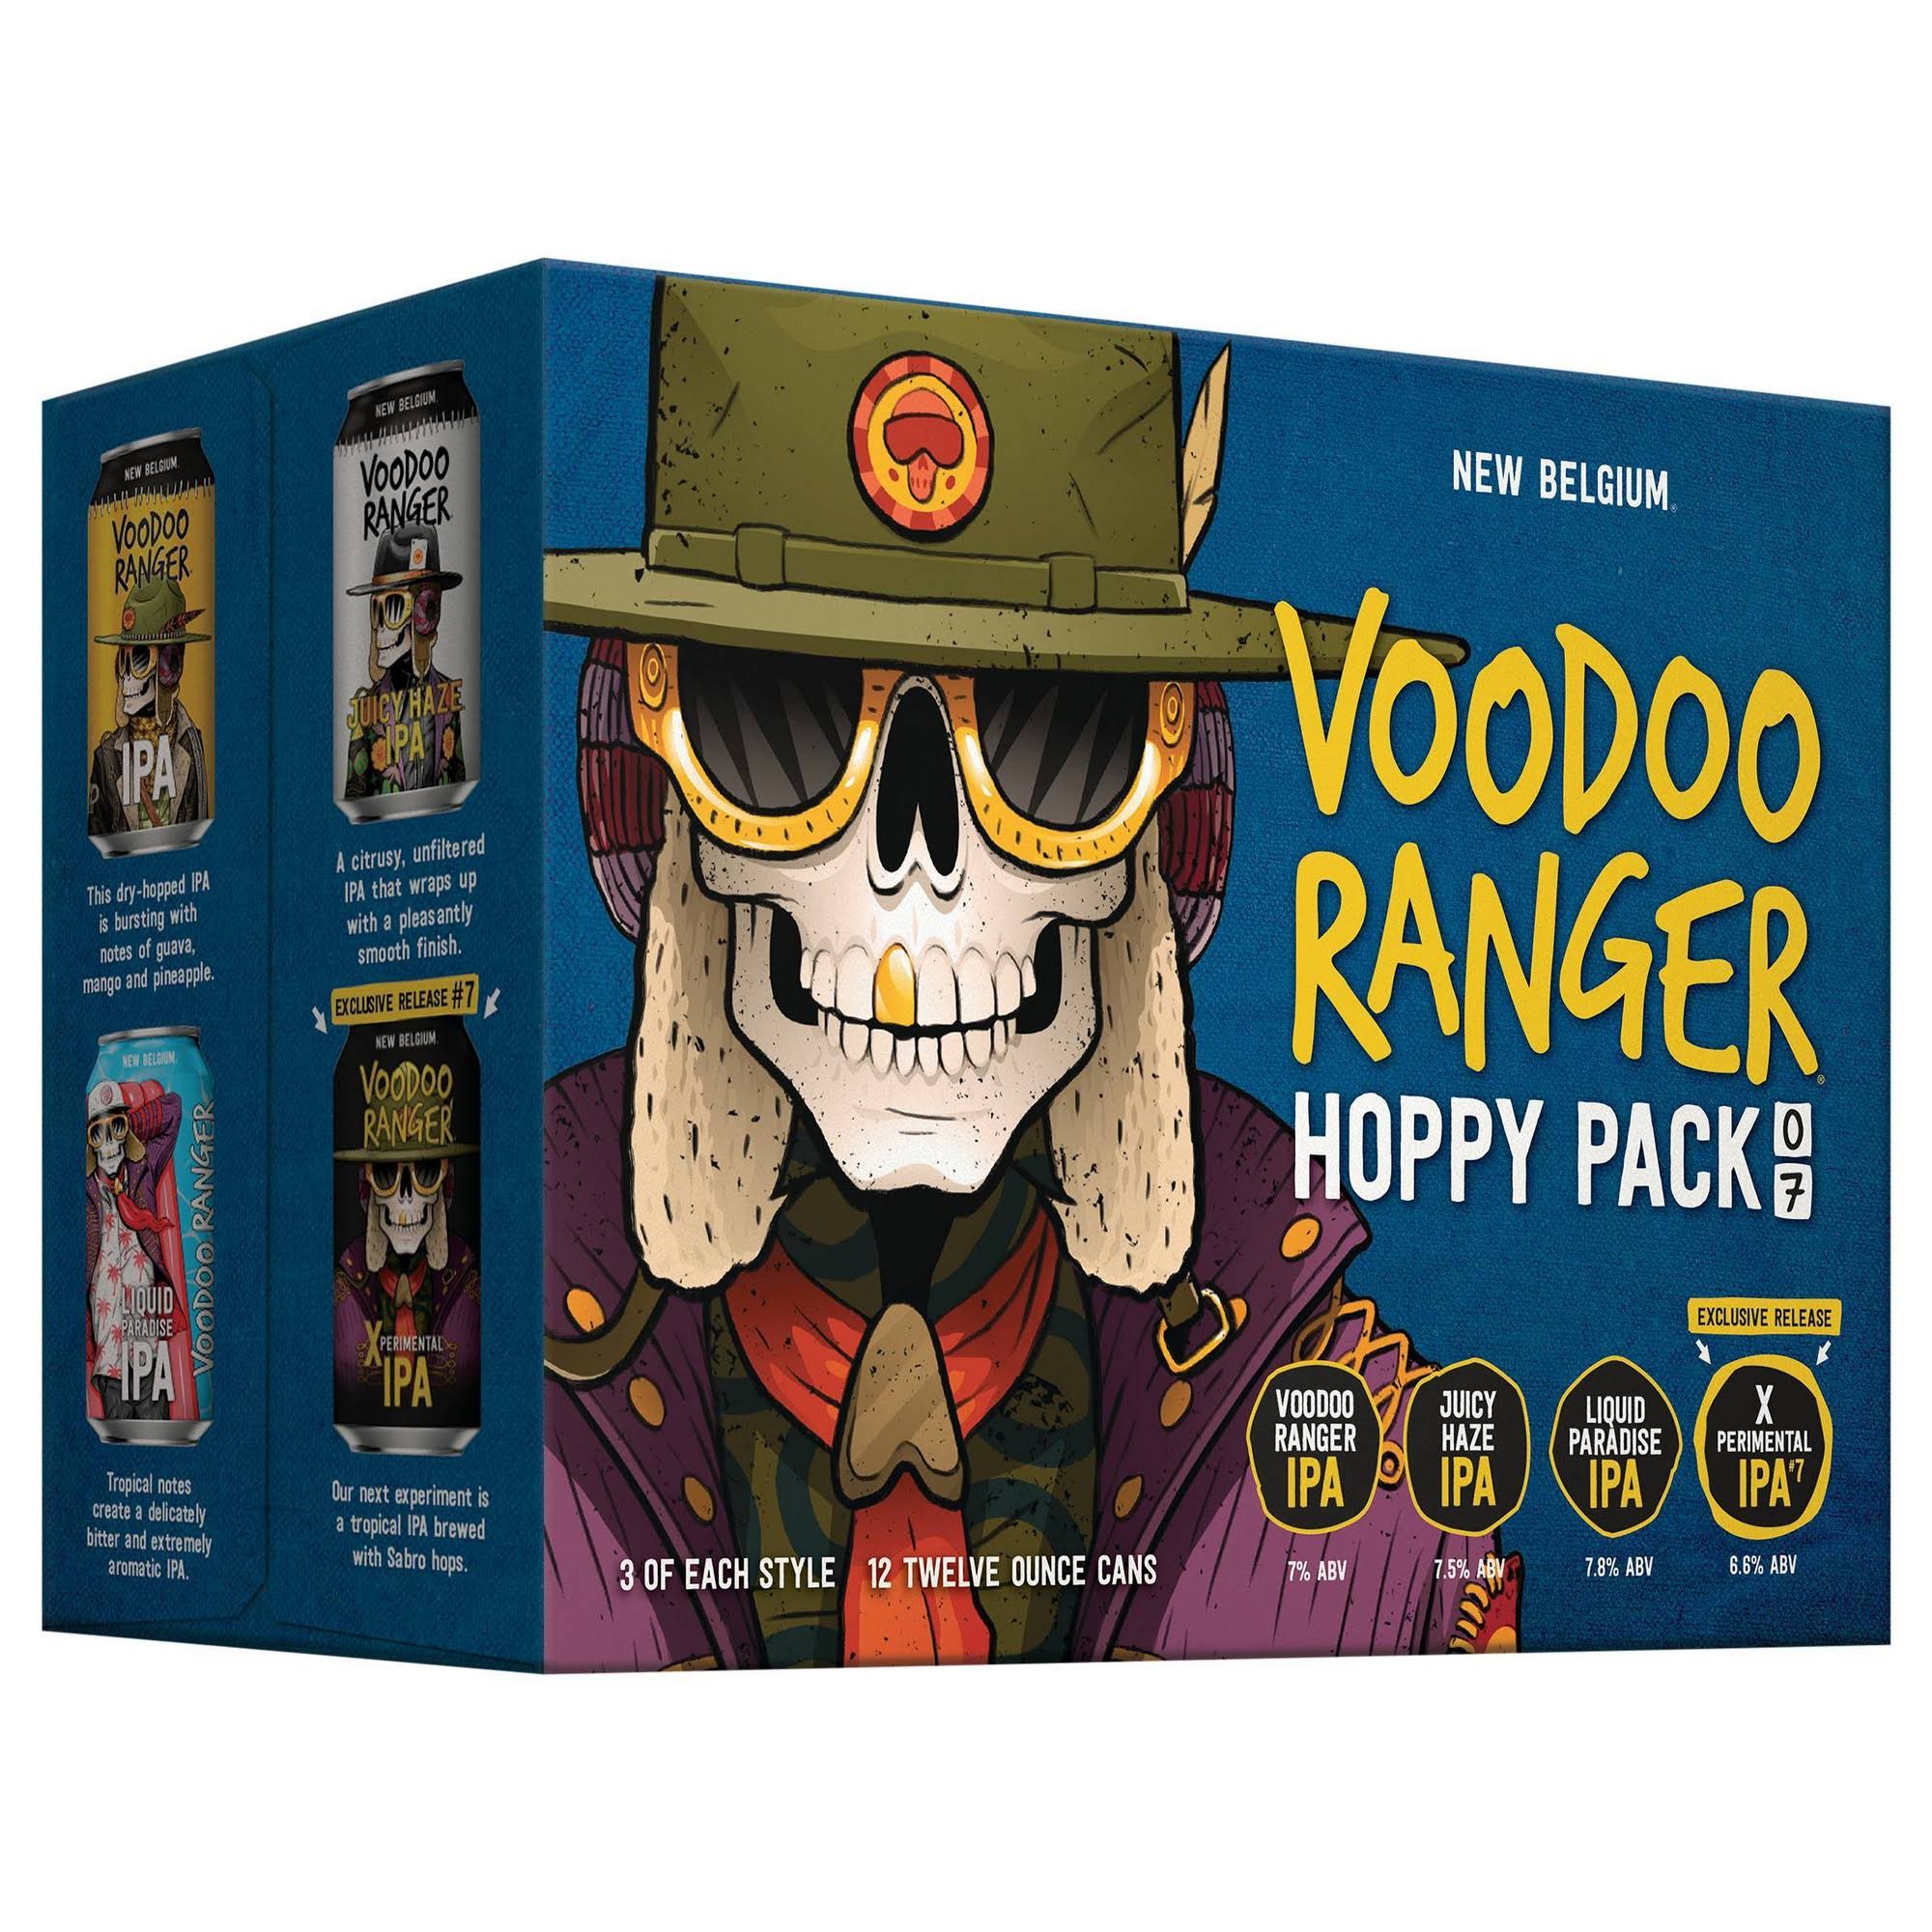 Voodoo Ranger Beer, IPA, Hoppy Pack - 12 pack, 12 oz cans